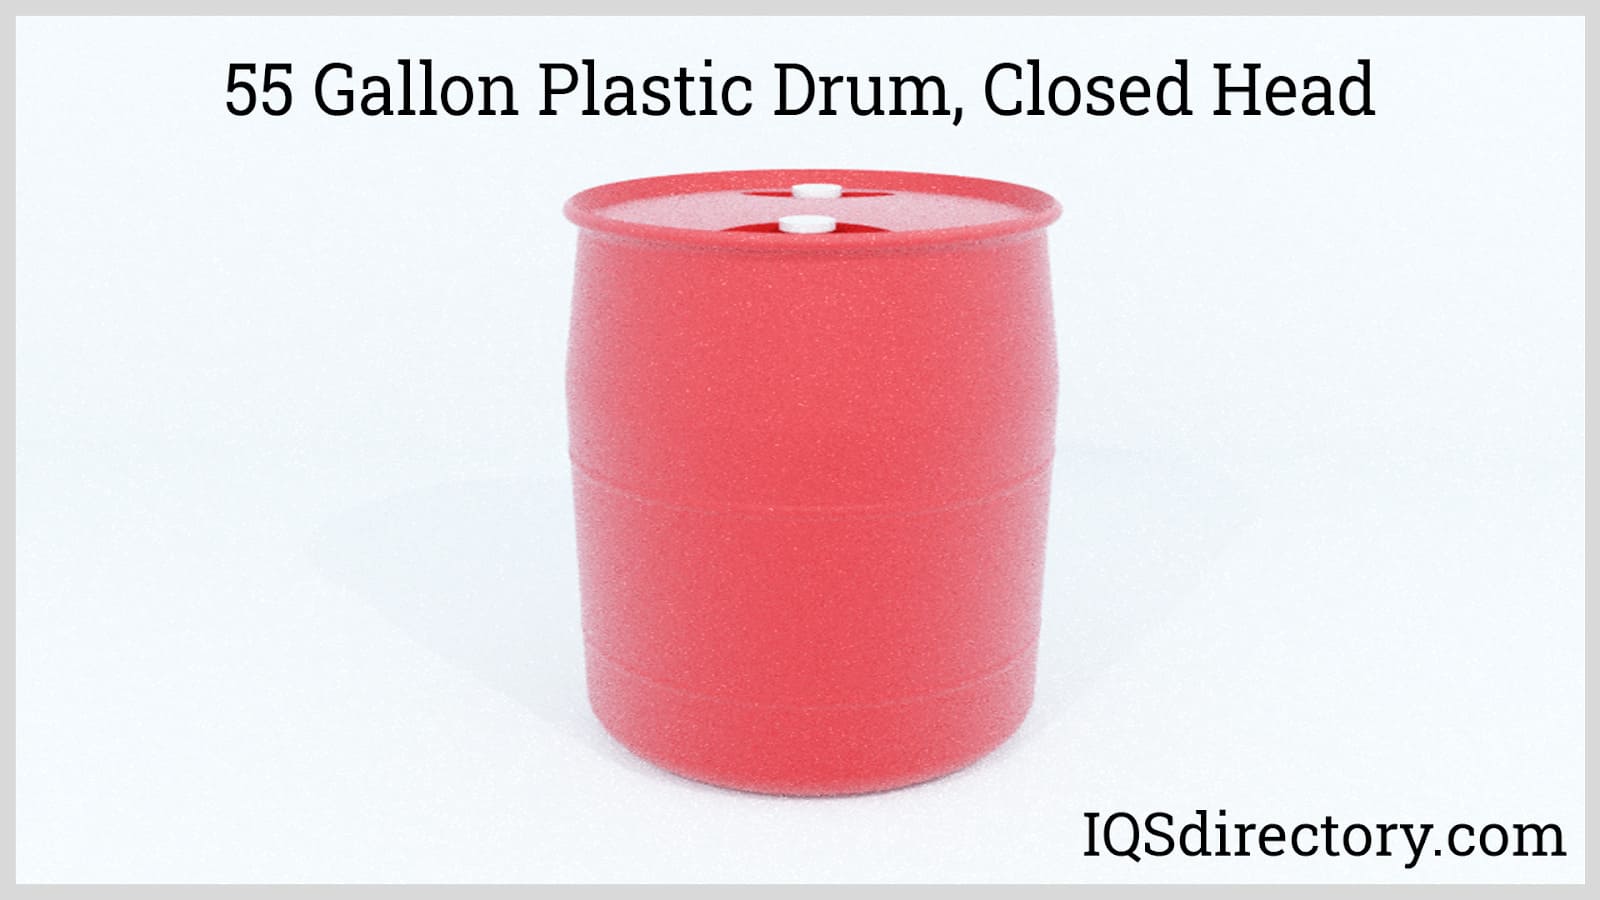 55 Gallon Plastic Drum Closed Head